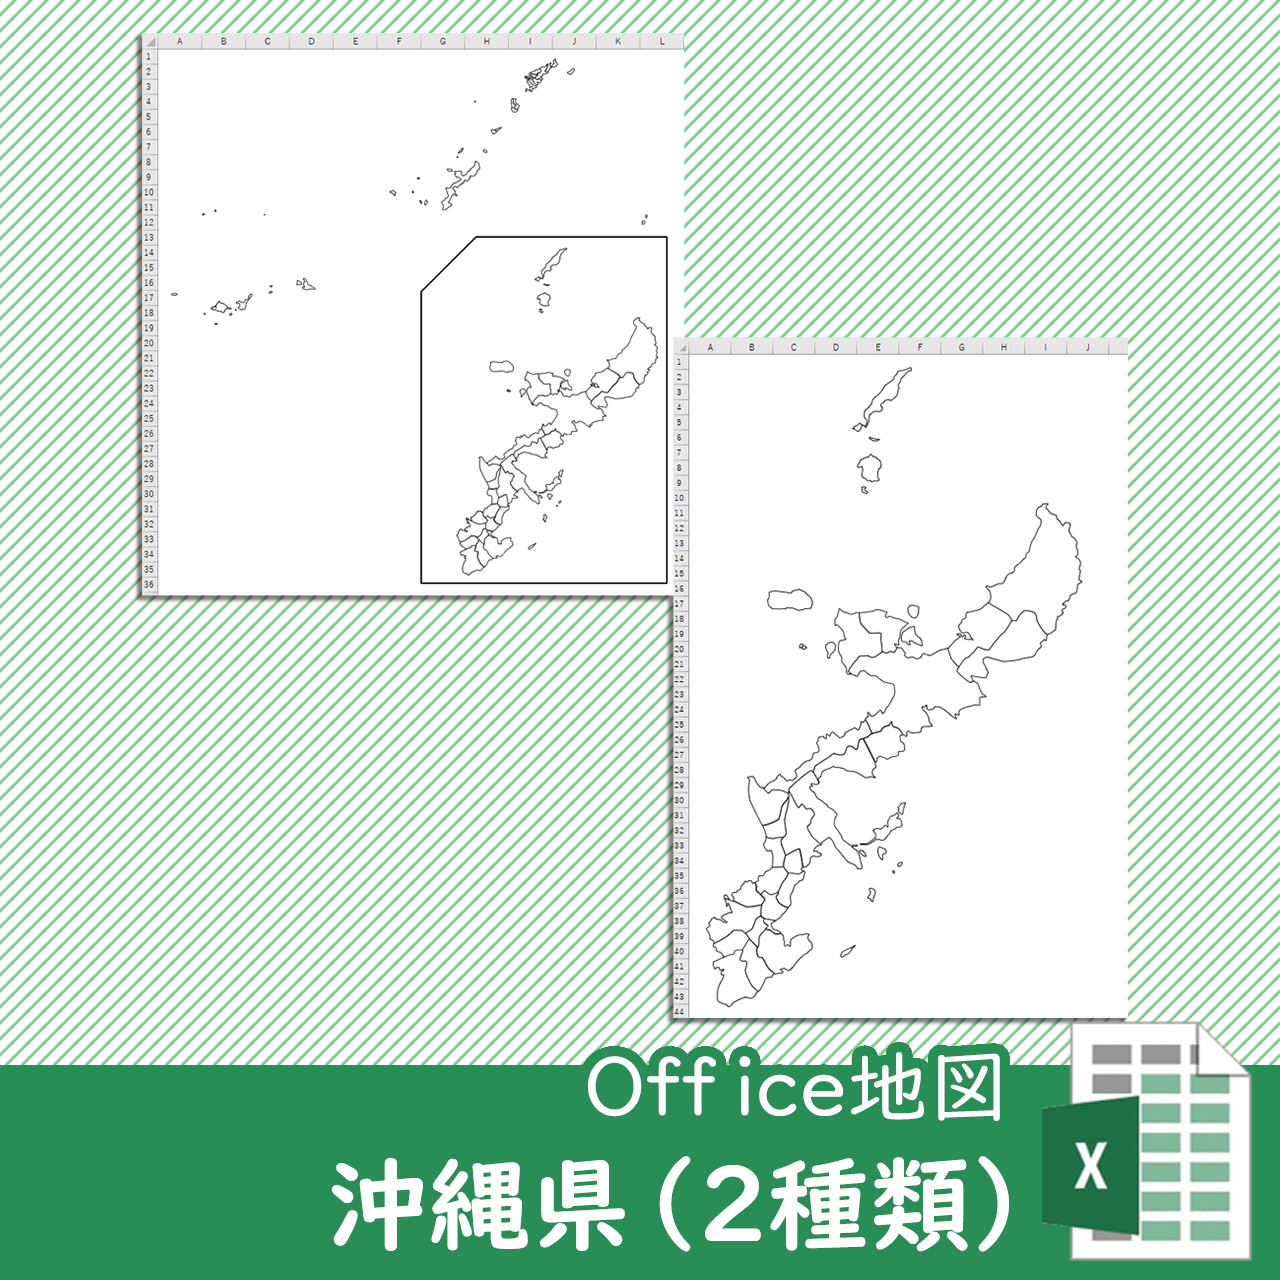 沖縄県のoffice地図